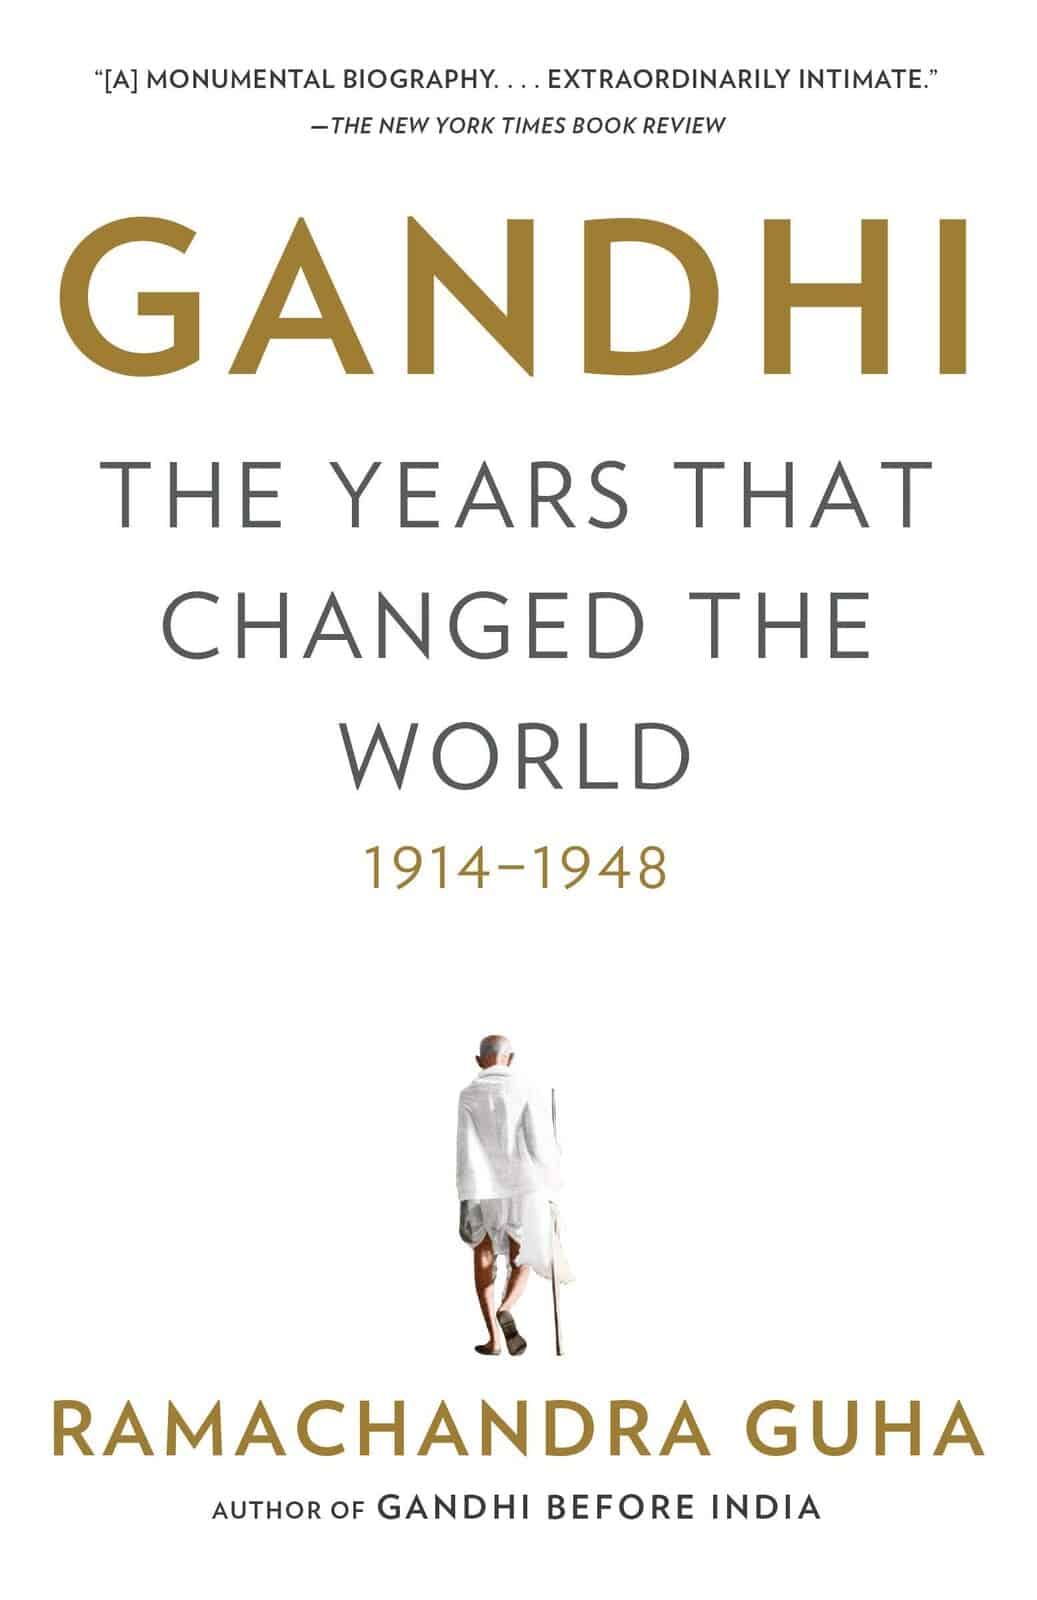 Gandhi – The Years That Changed The World by Ramachandra Guha